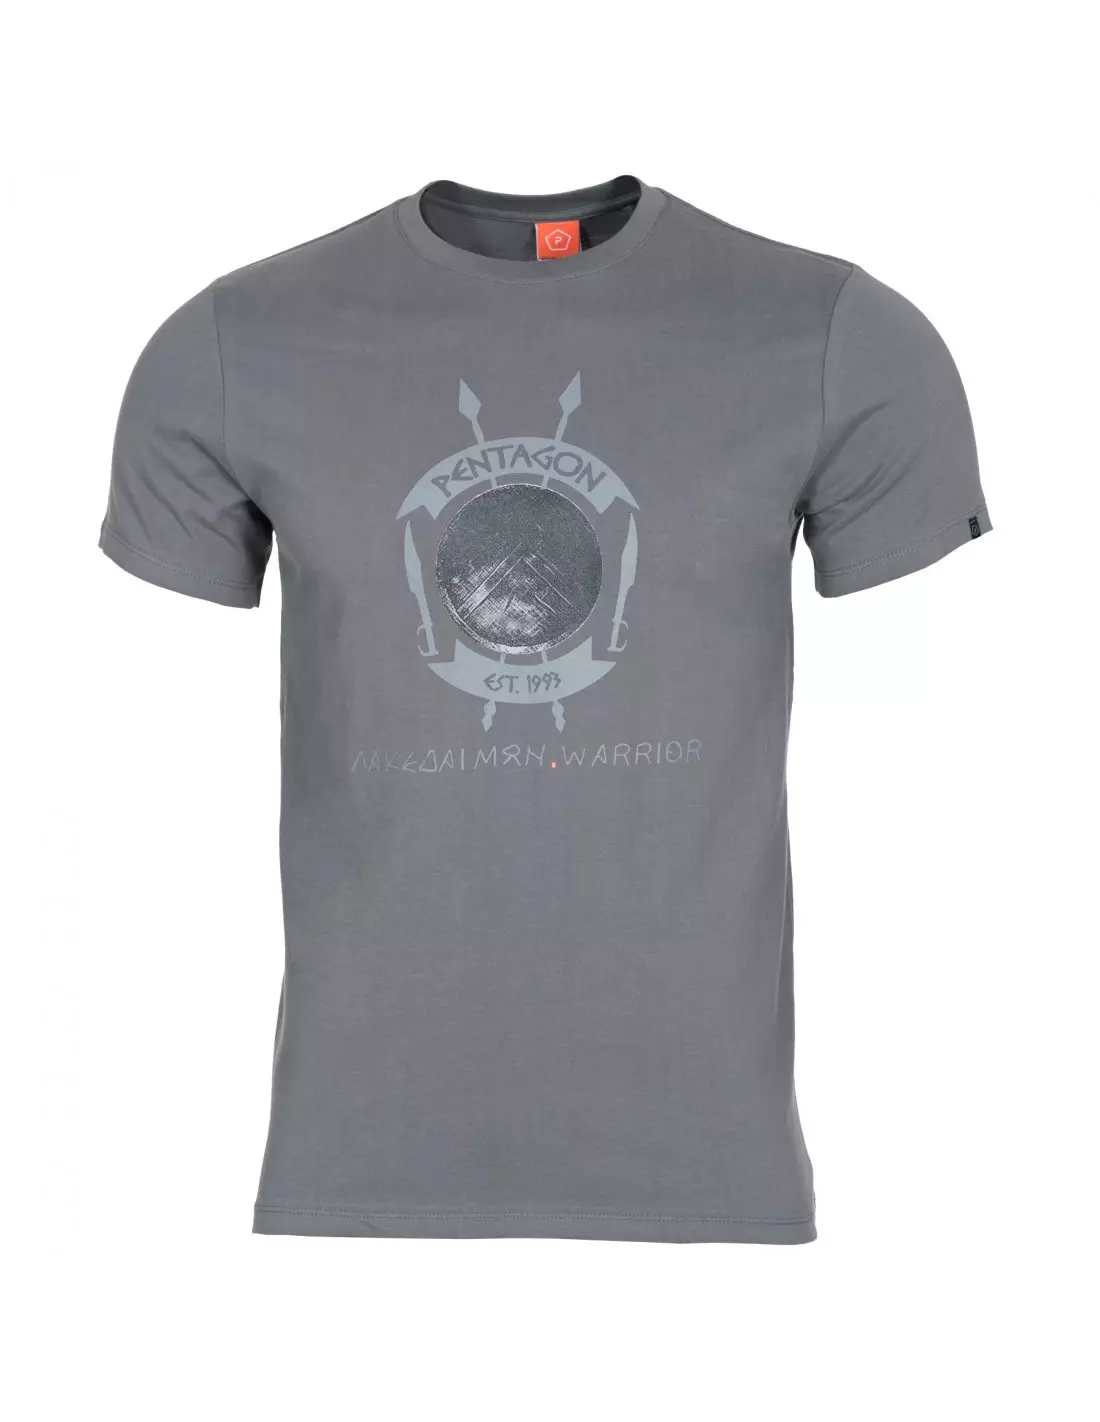 Pentagon AGERON T-shirts - Lakedaimon Warrior - Wolf Grey